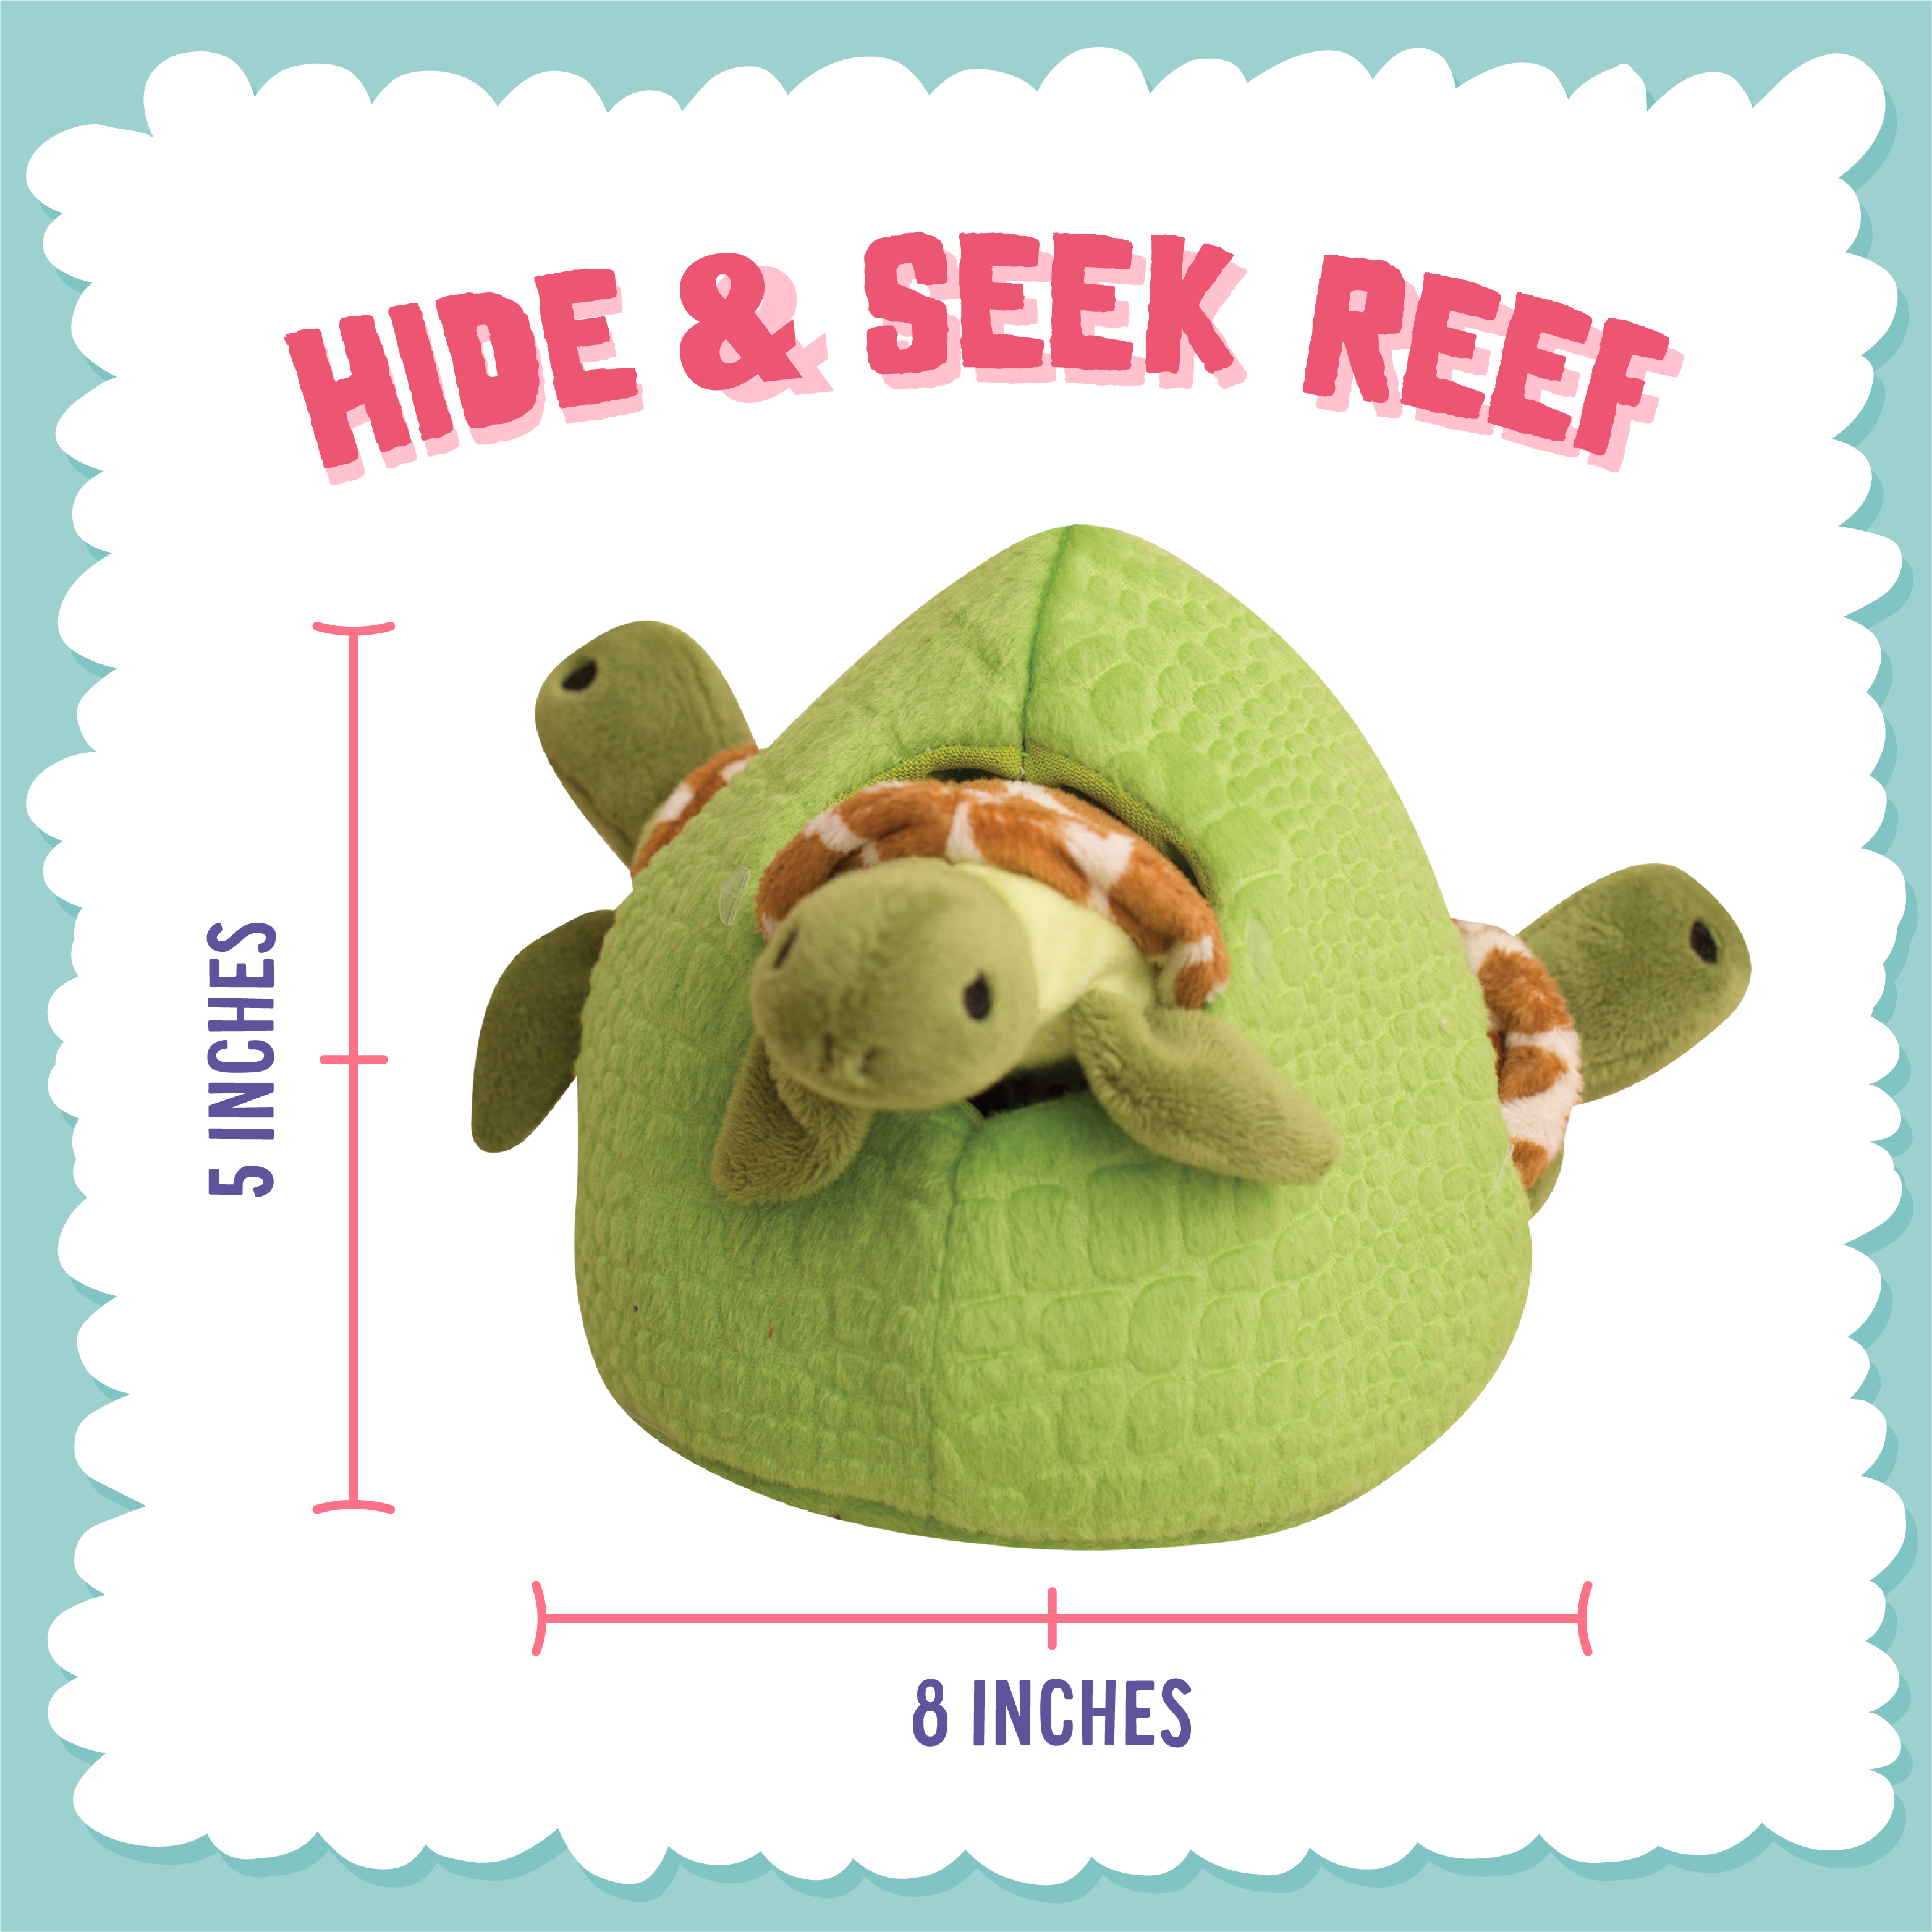 Hide & Seek Reef